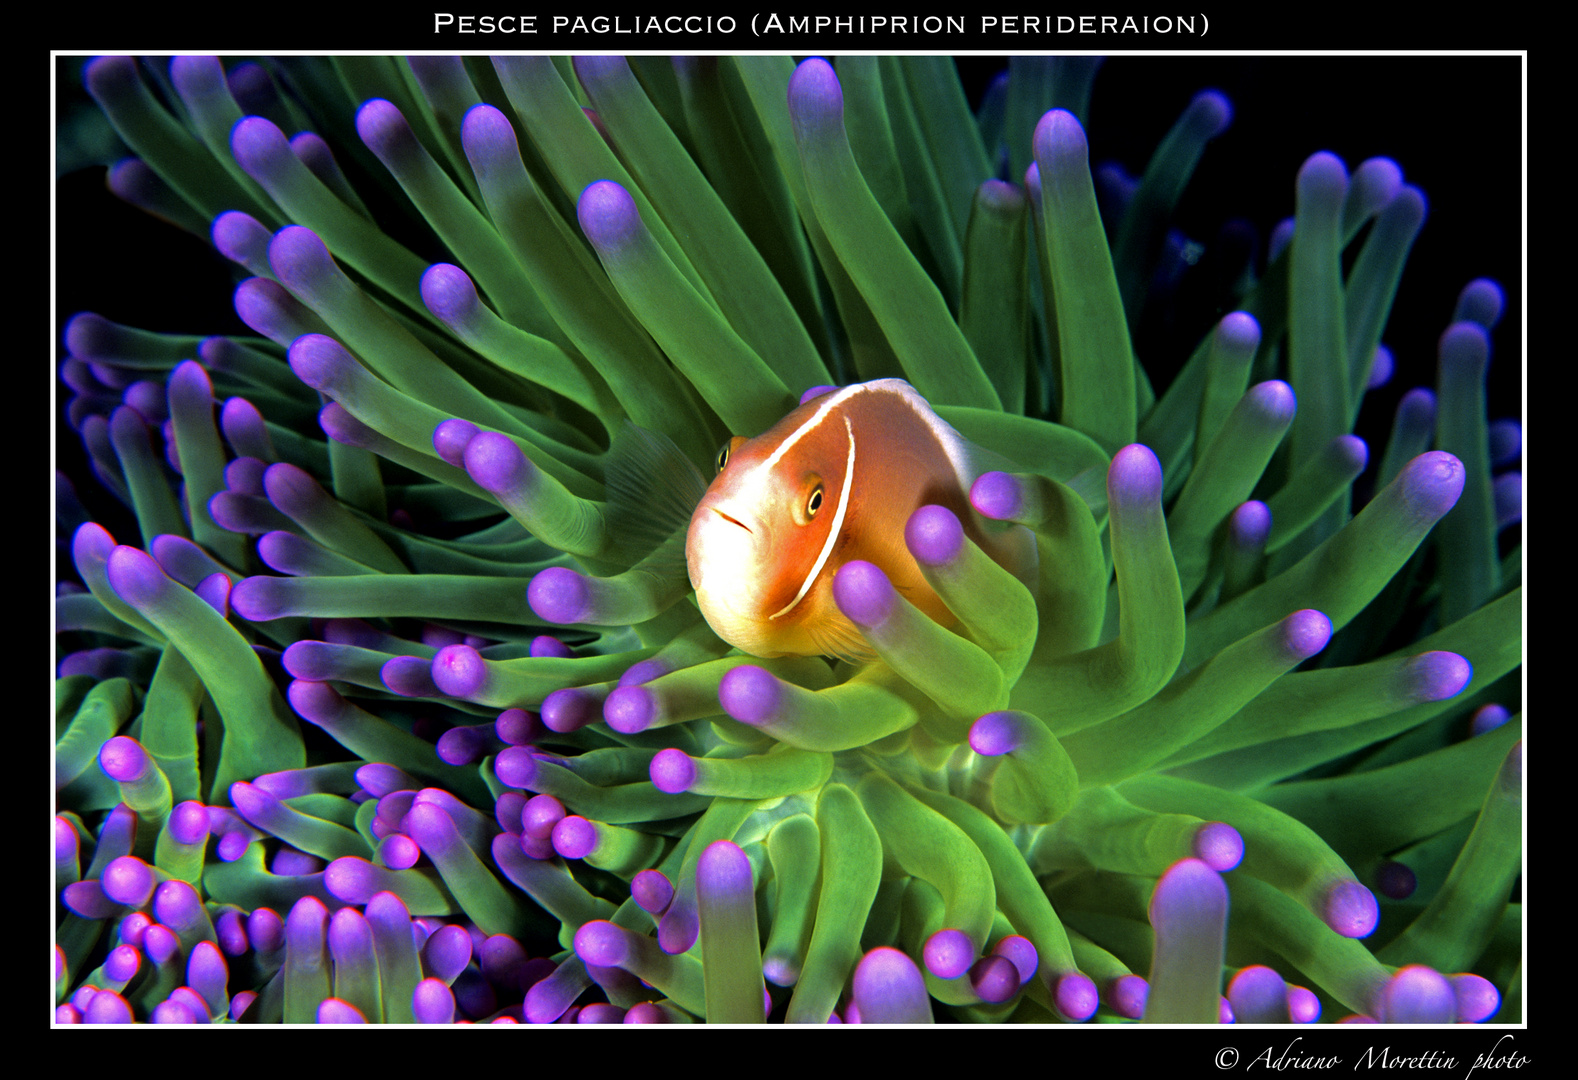 Pesce pagliaccio (Amphiprion perideraion) su anemone verde